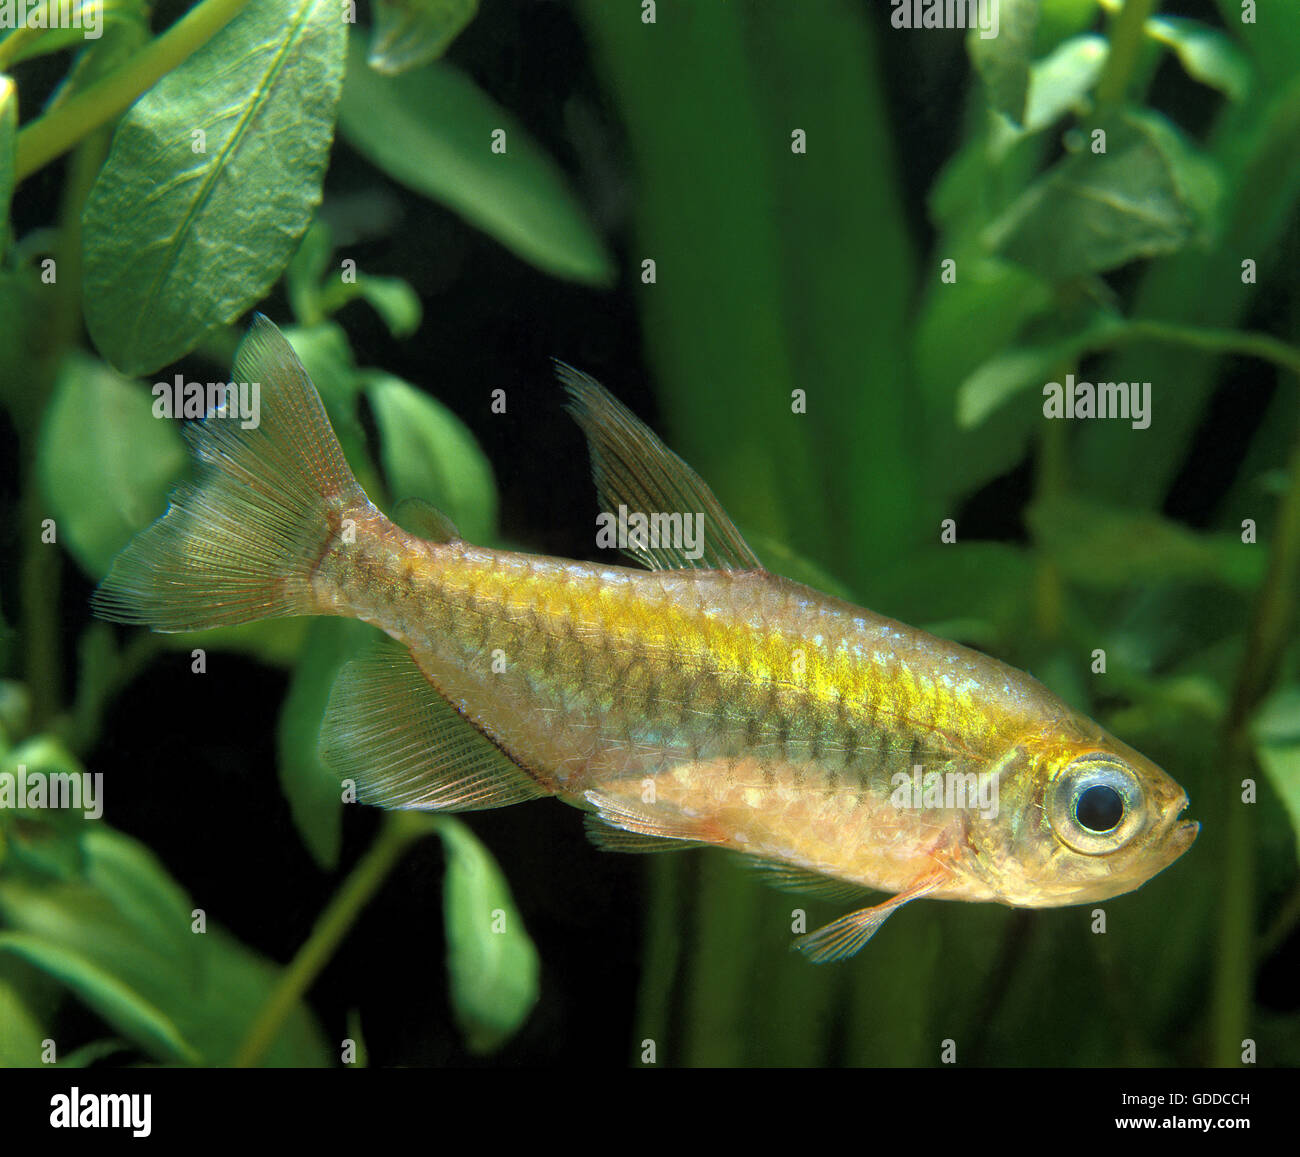 Congo Tetra, phenacogrammus interruptus, Aquarium Fish Stock Photo